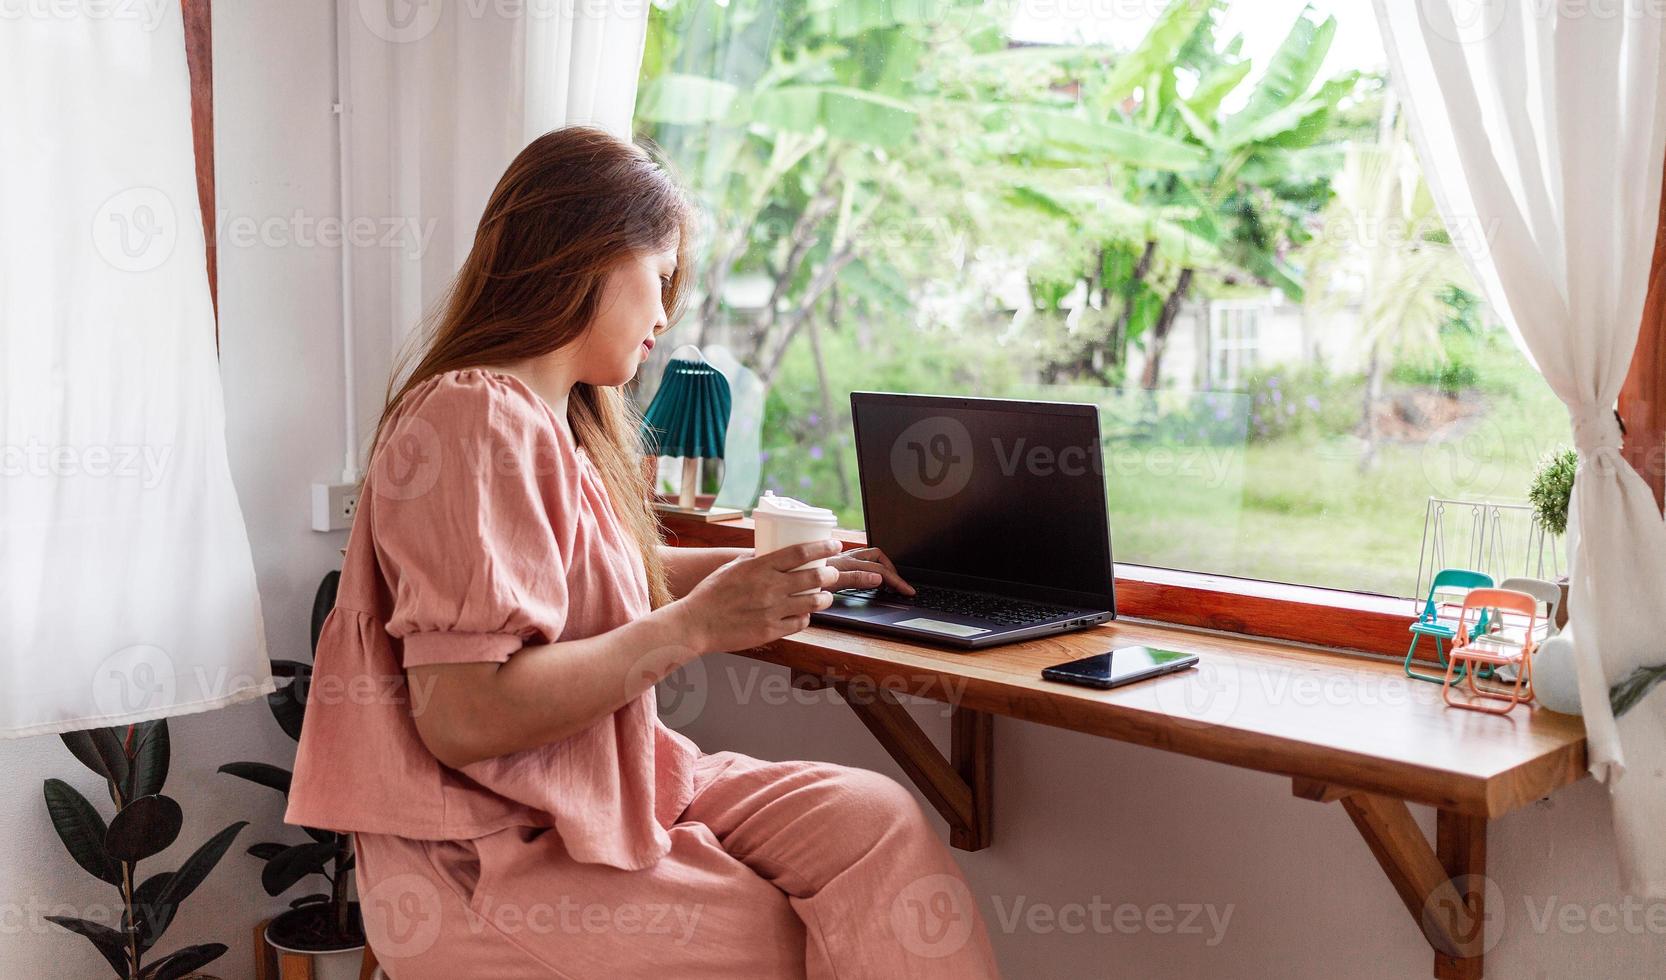 una mujer feliz en un café usando una computadora portátil en la mano y una taza de café de papel. joven mujer blanca con cabello largo sentada en una cafetería ocupada trabajando en su computadora portátil. foto